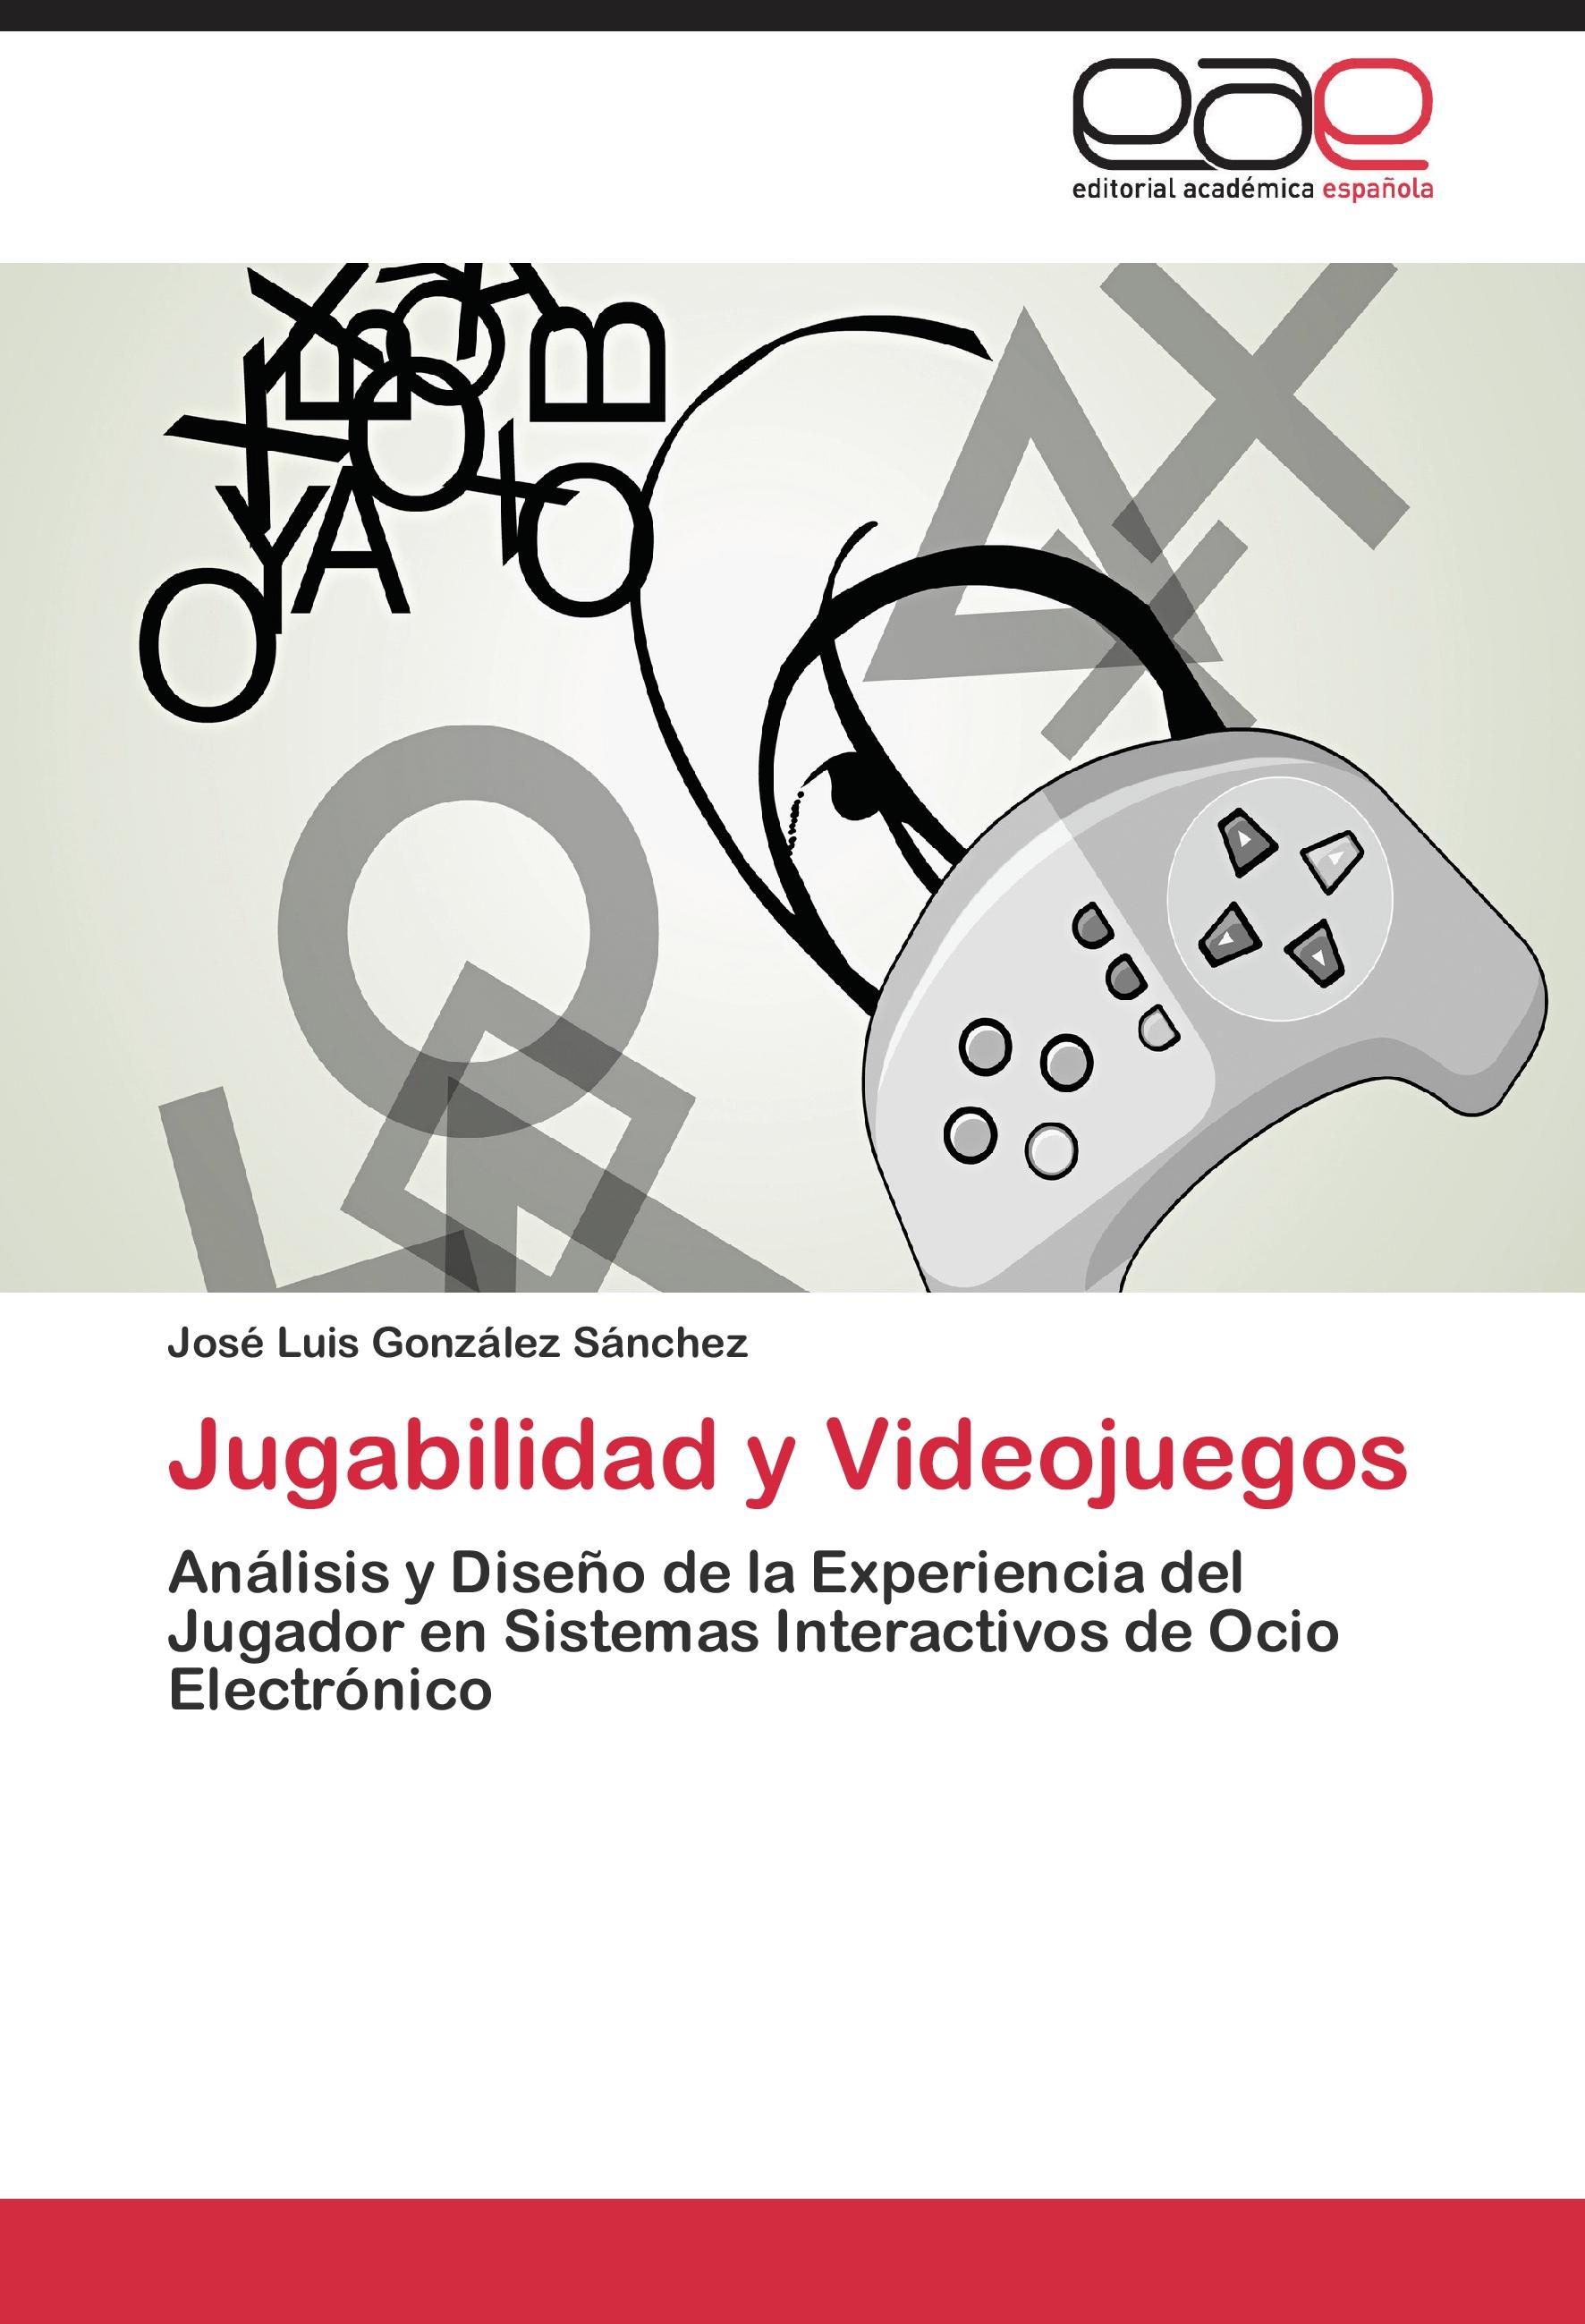 Jugabilidad y Videojuegos - José Luis González Sánchez